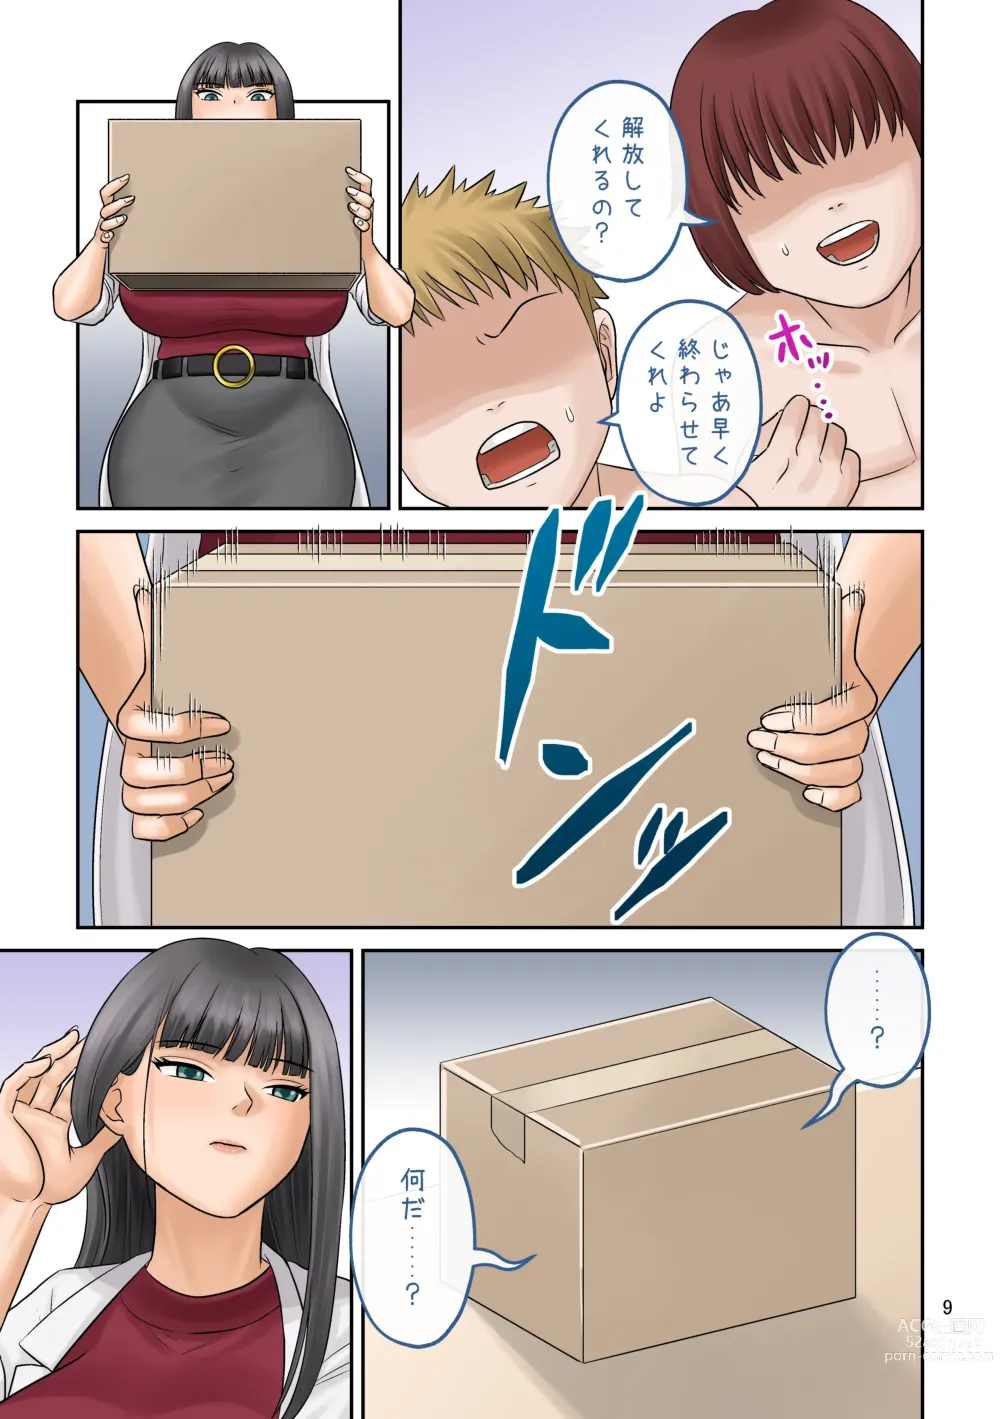 Page 9 of doujinshi Little shorts 【shrinker】